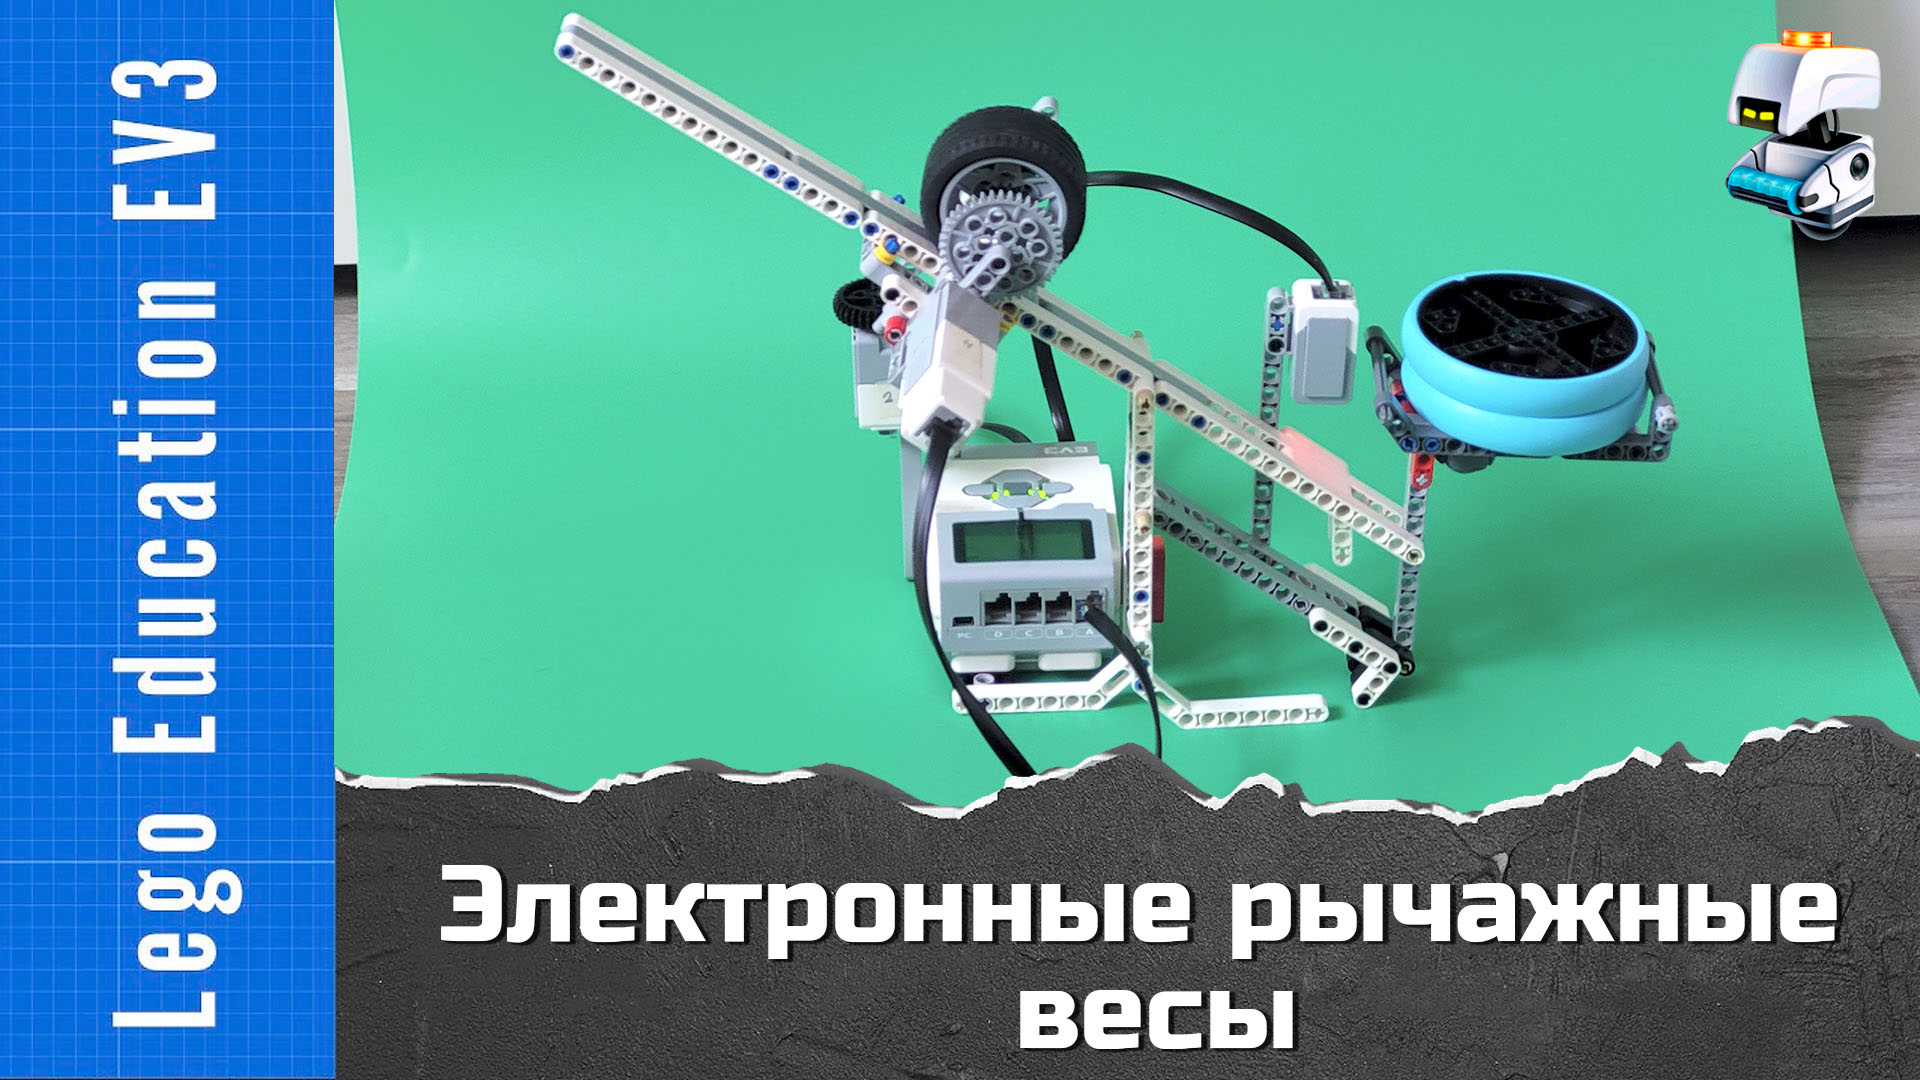 Рычажные электронные весы из Lego EV3. ПД-регулятор